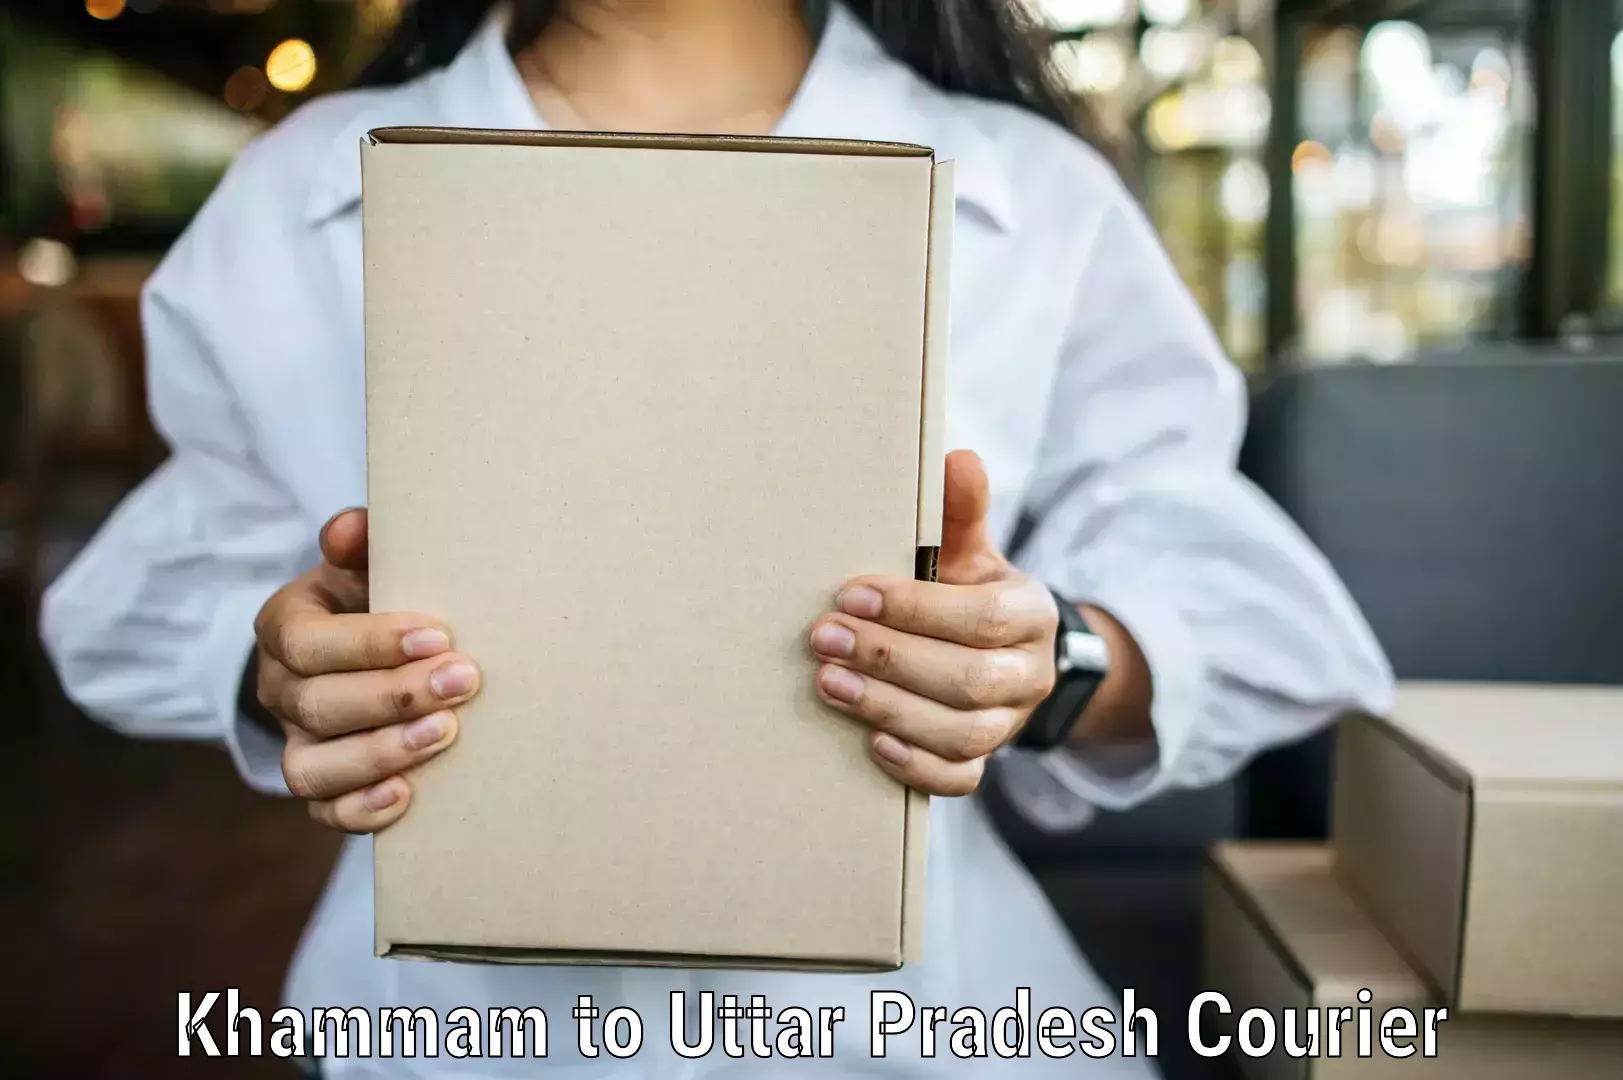 Bulk courier orders Khammam to Modinagar